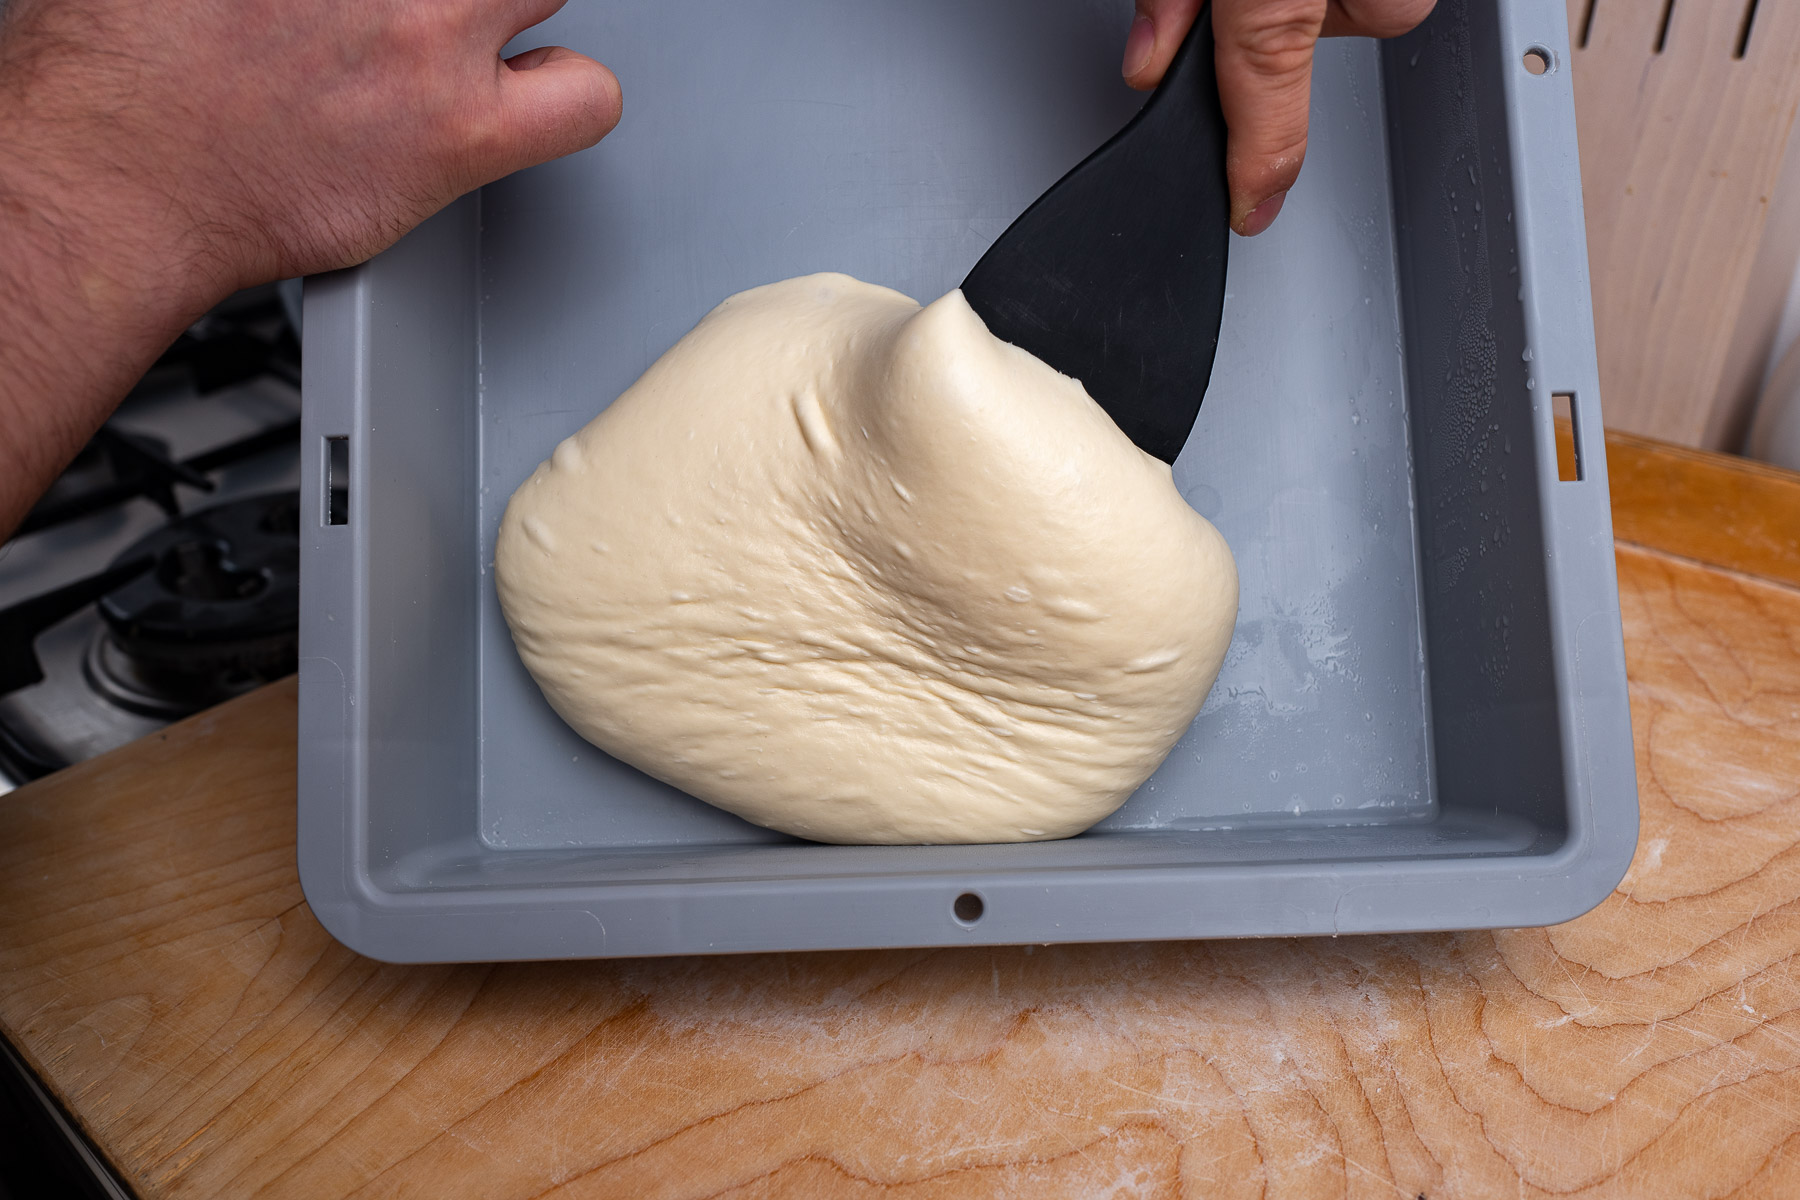 po kilkunastu godzinach w lodówce wyciągamy ciasto na blat - dzięki temu że jest zimne, nie klei się zbytnio do rąk